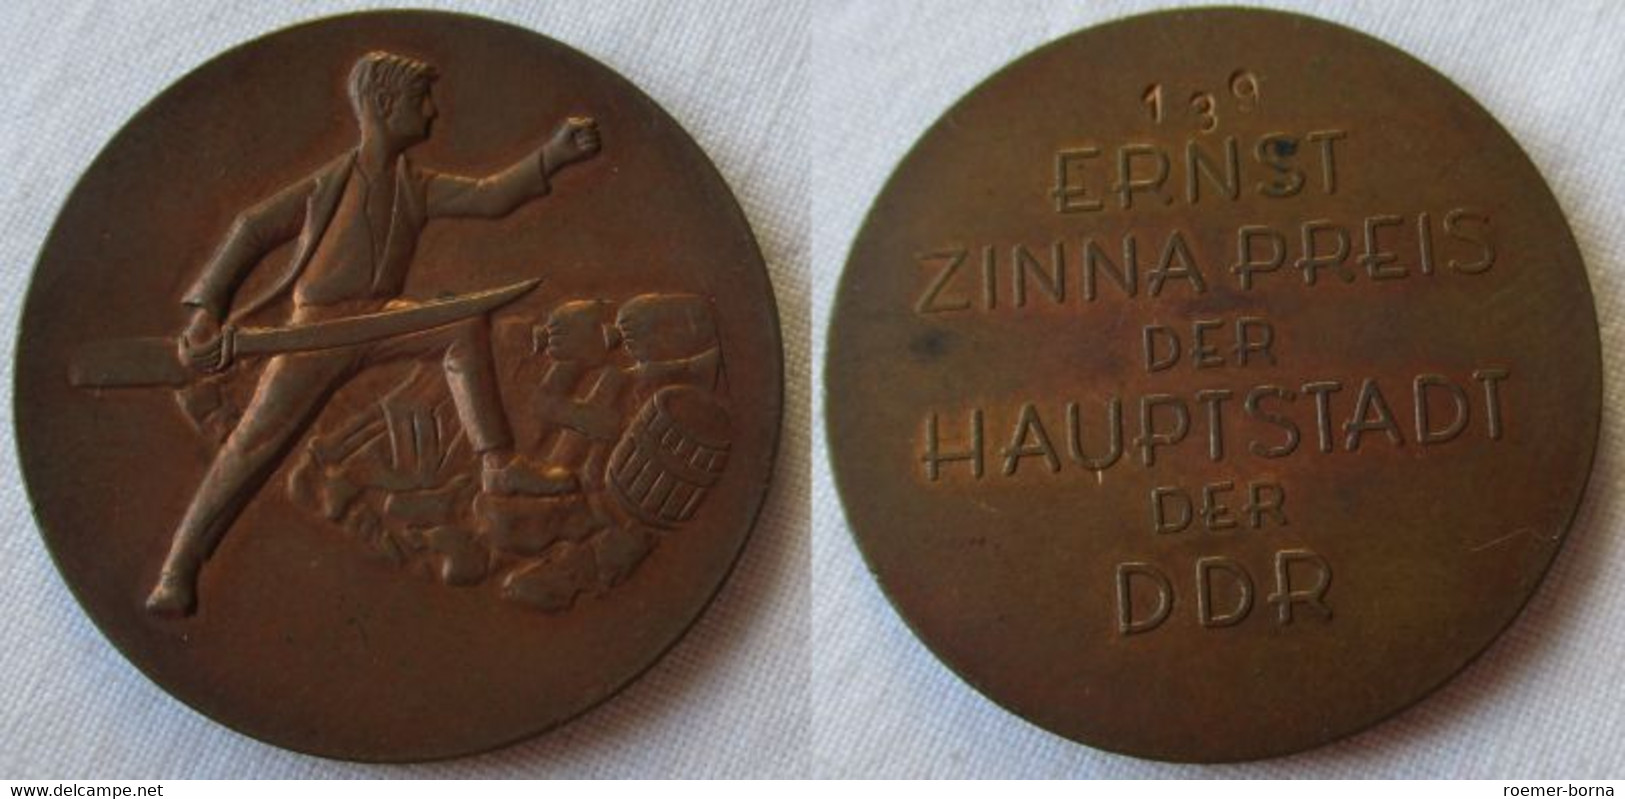 DDR Abzeichen Ernst Zinna Preis Der Hauptstadt Der DDR PROBE Nr. 139 (111165) - RDA